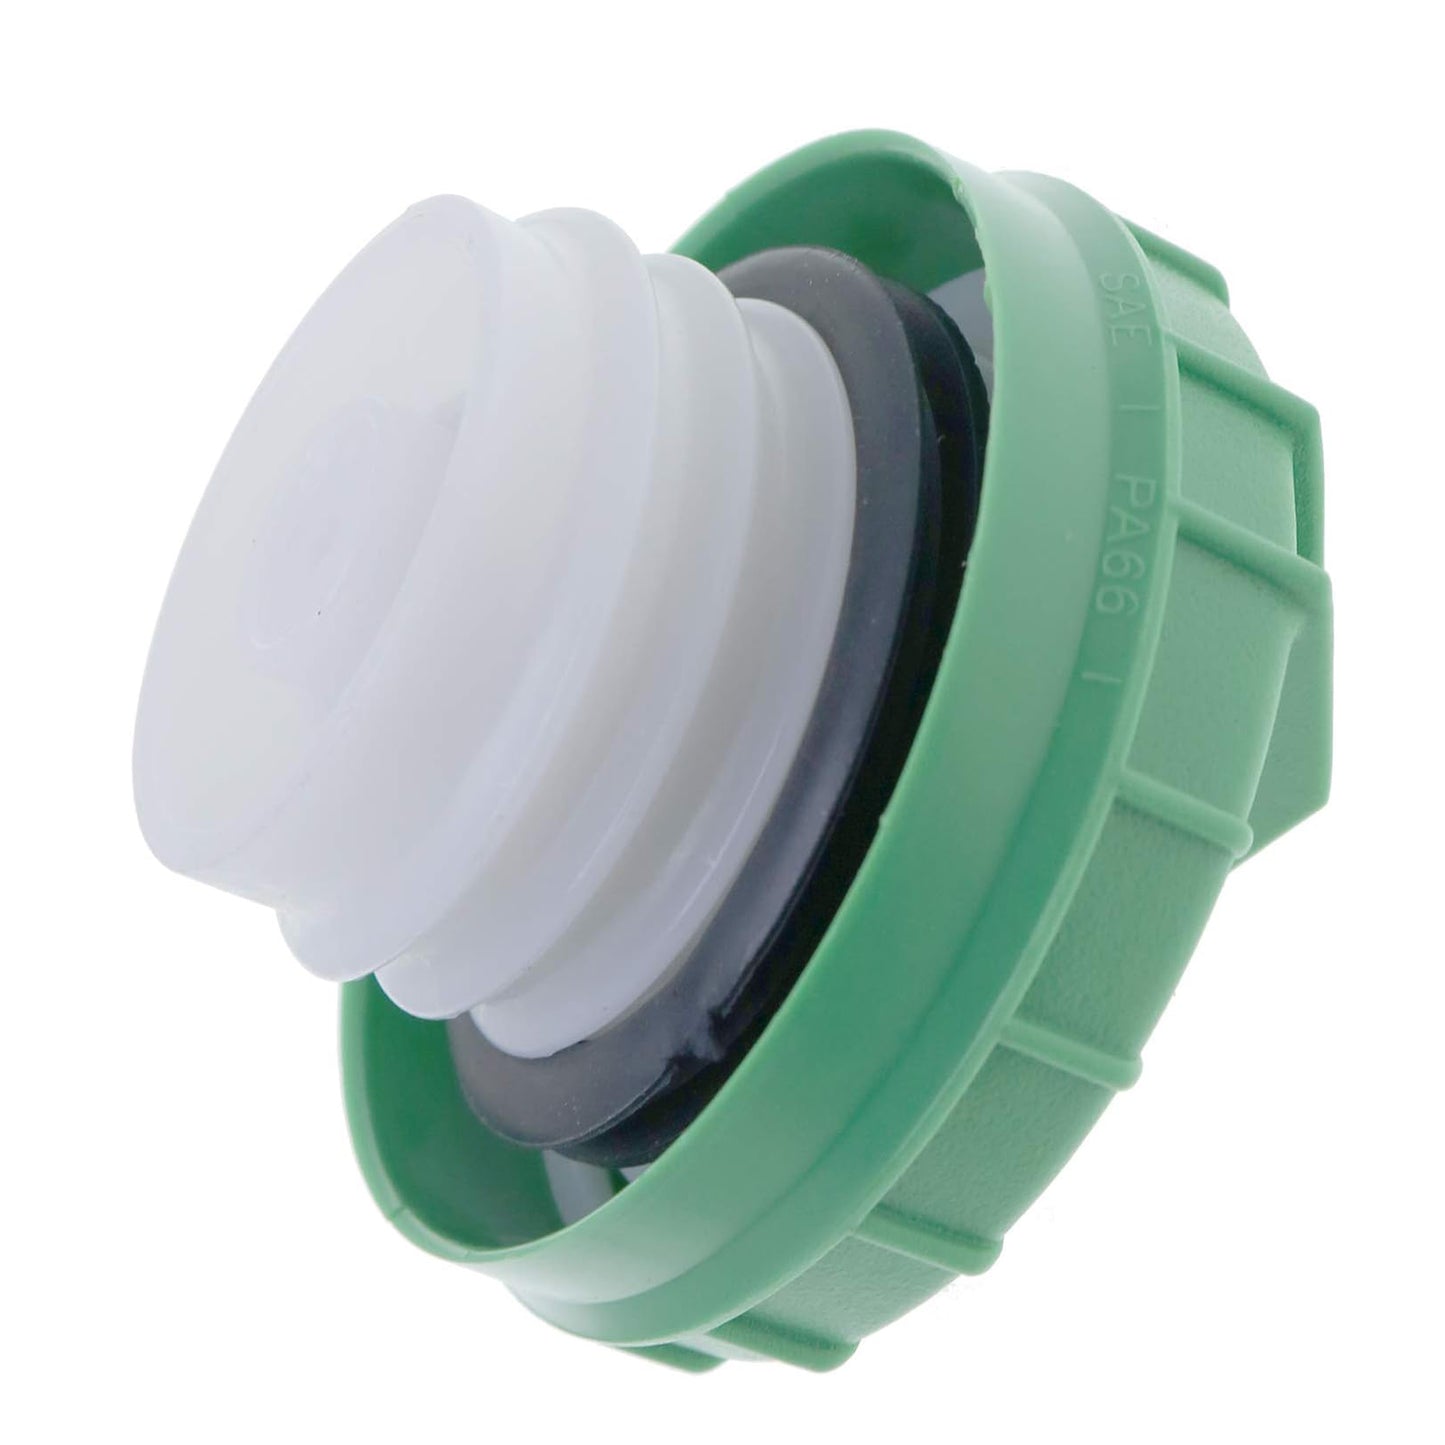 2X 6632468 Green Fuel Fill Cap Compatible with New Holland L190 LS180 LS180.B L160 L170